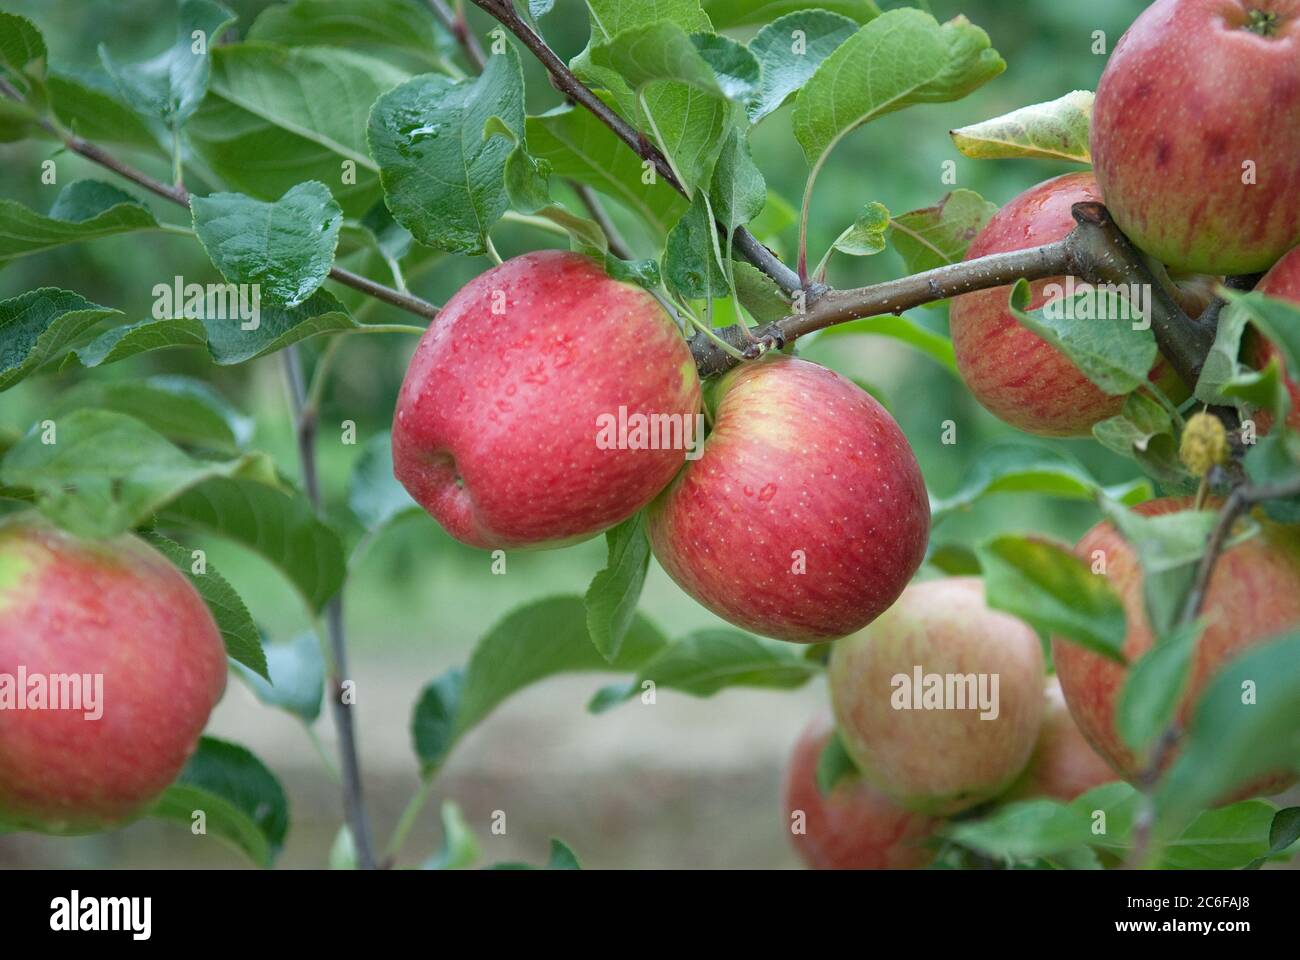 Apfel, Malus domestica Rekarda, Apple, Malus domestica Rekarda Stock Photo